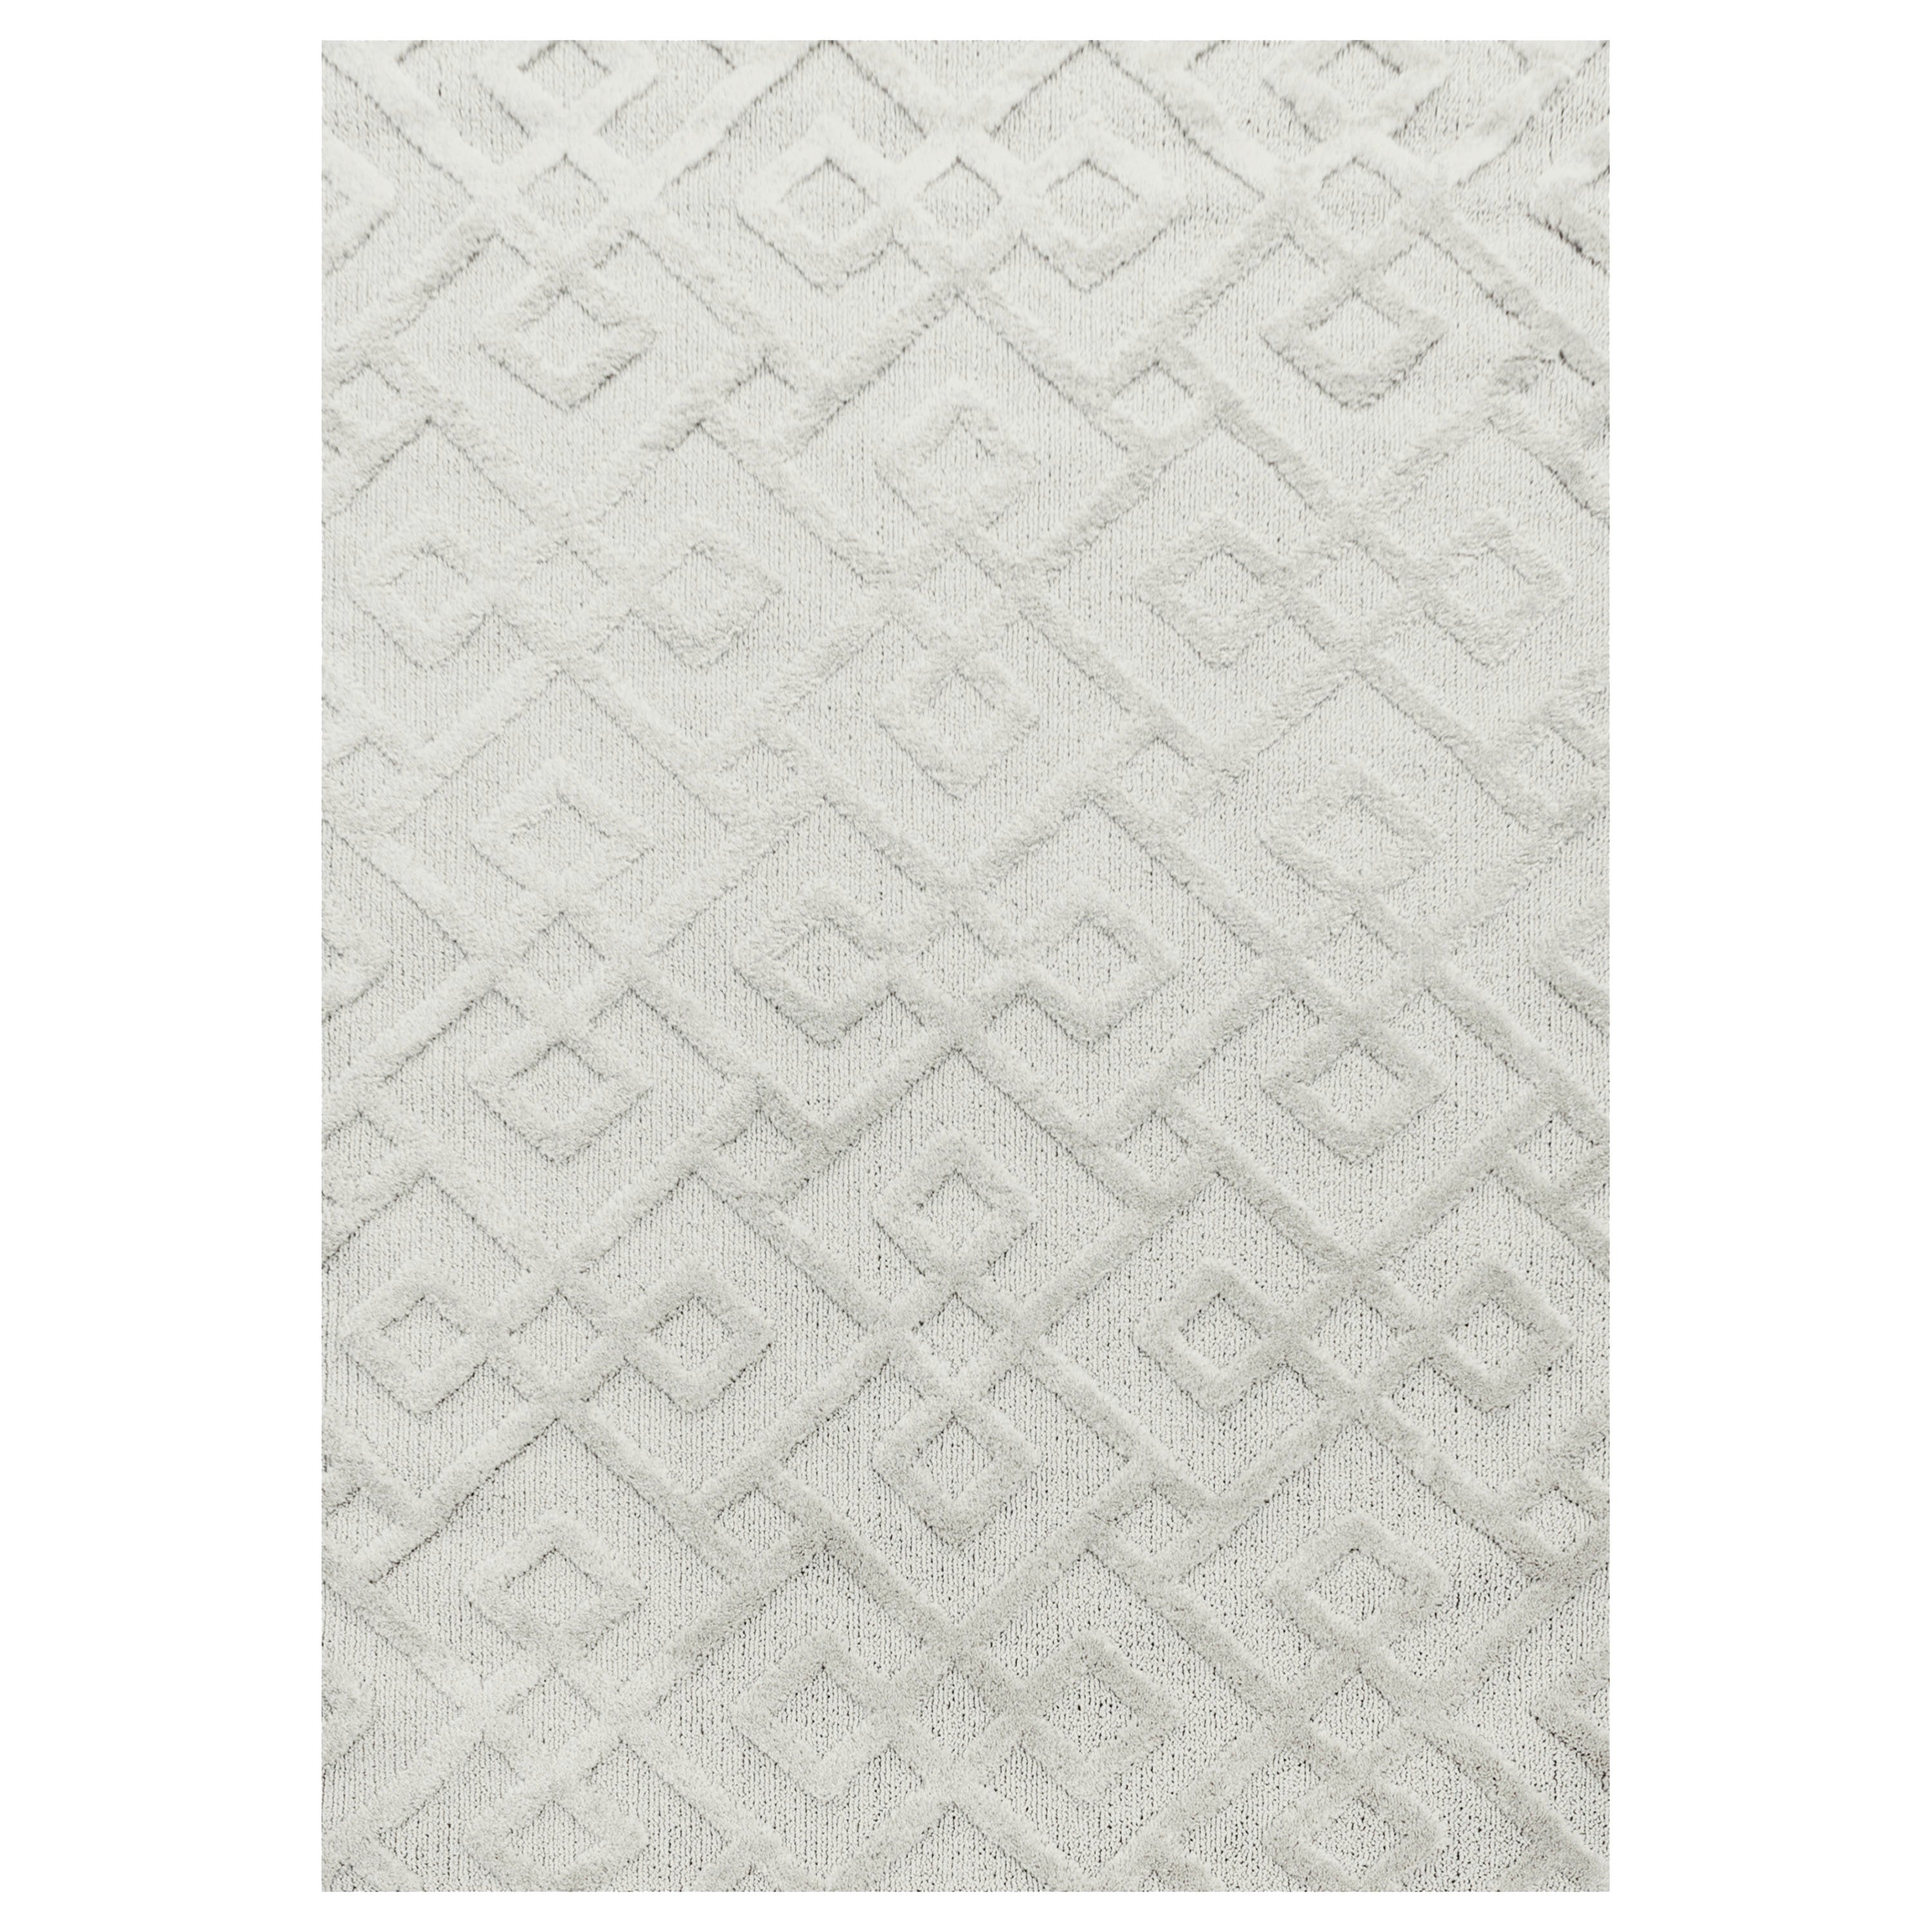 Tapis bohème à relief blanc ivoire 120x170cm